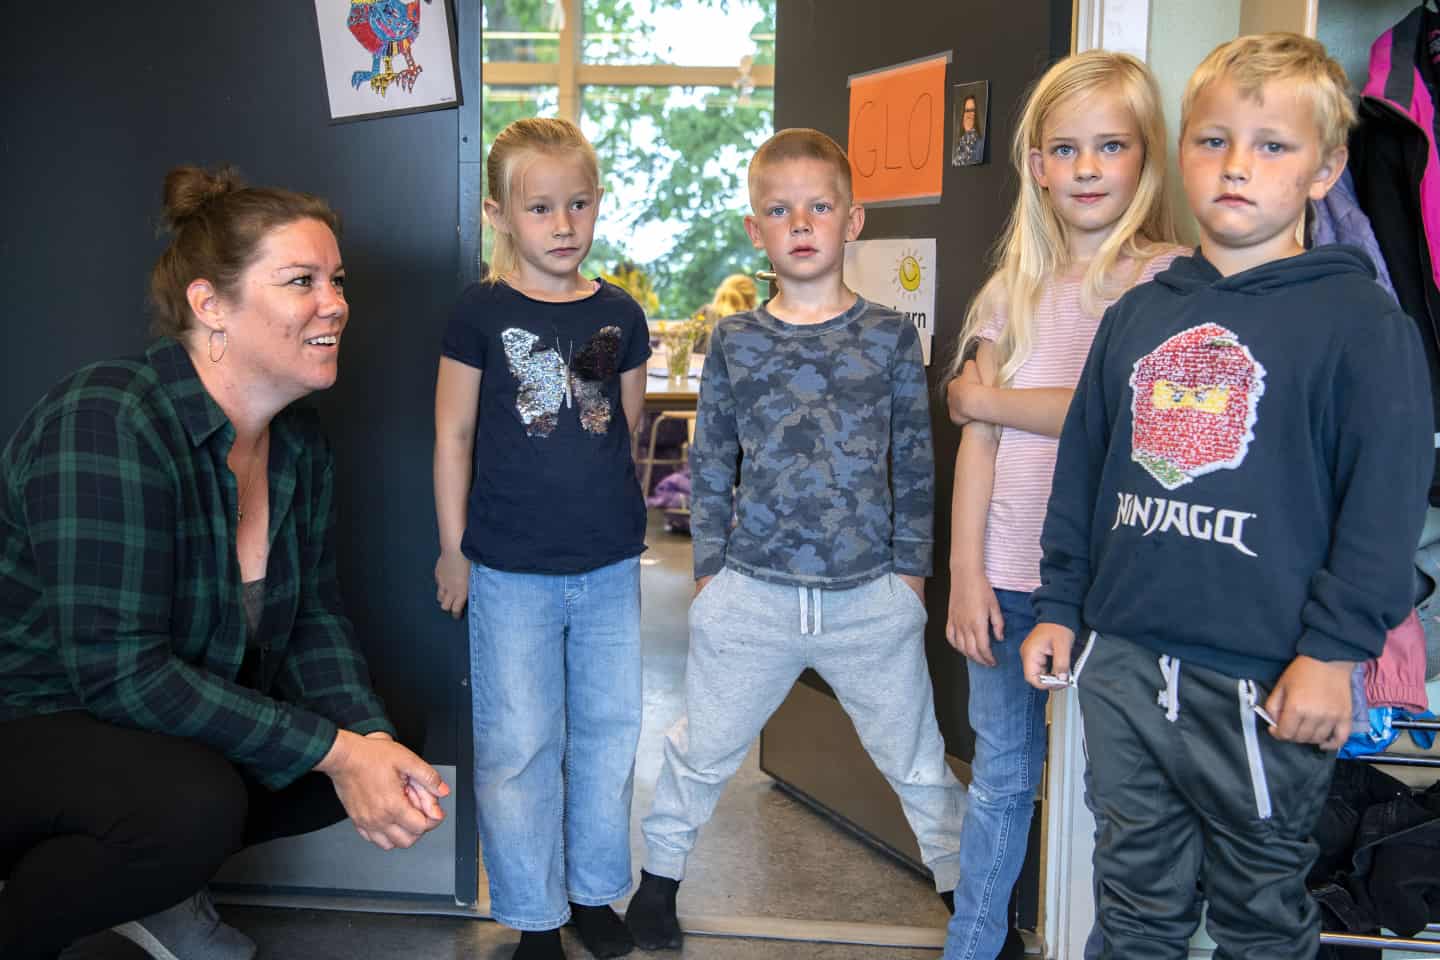 crack Somatisk celle Fjernelse Skolepædagog: Vi får bedre kontakt med børnene, når forældrene ikke er her  | jv.dk